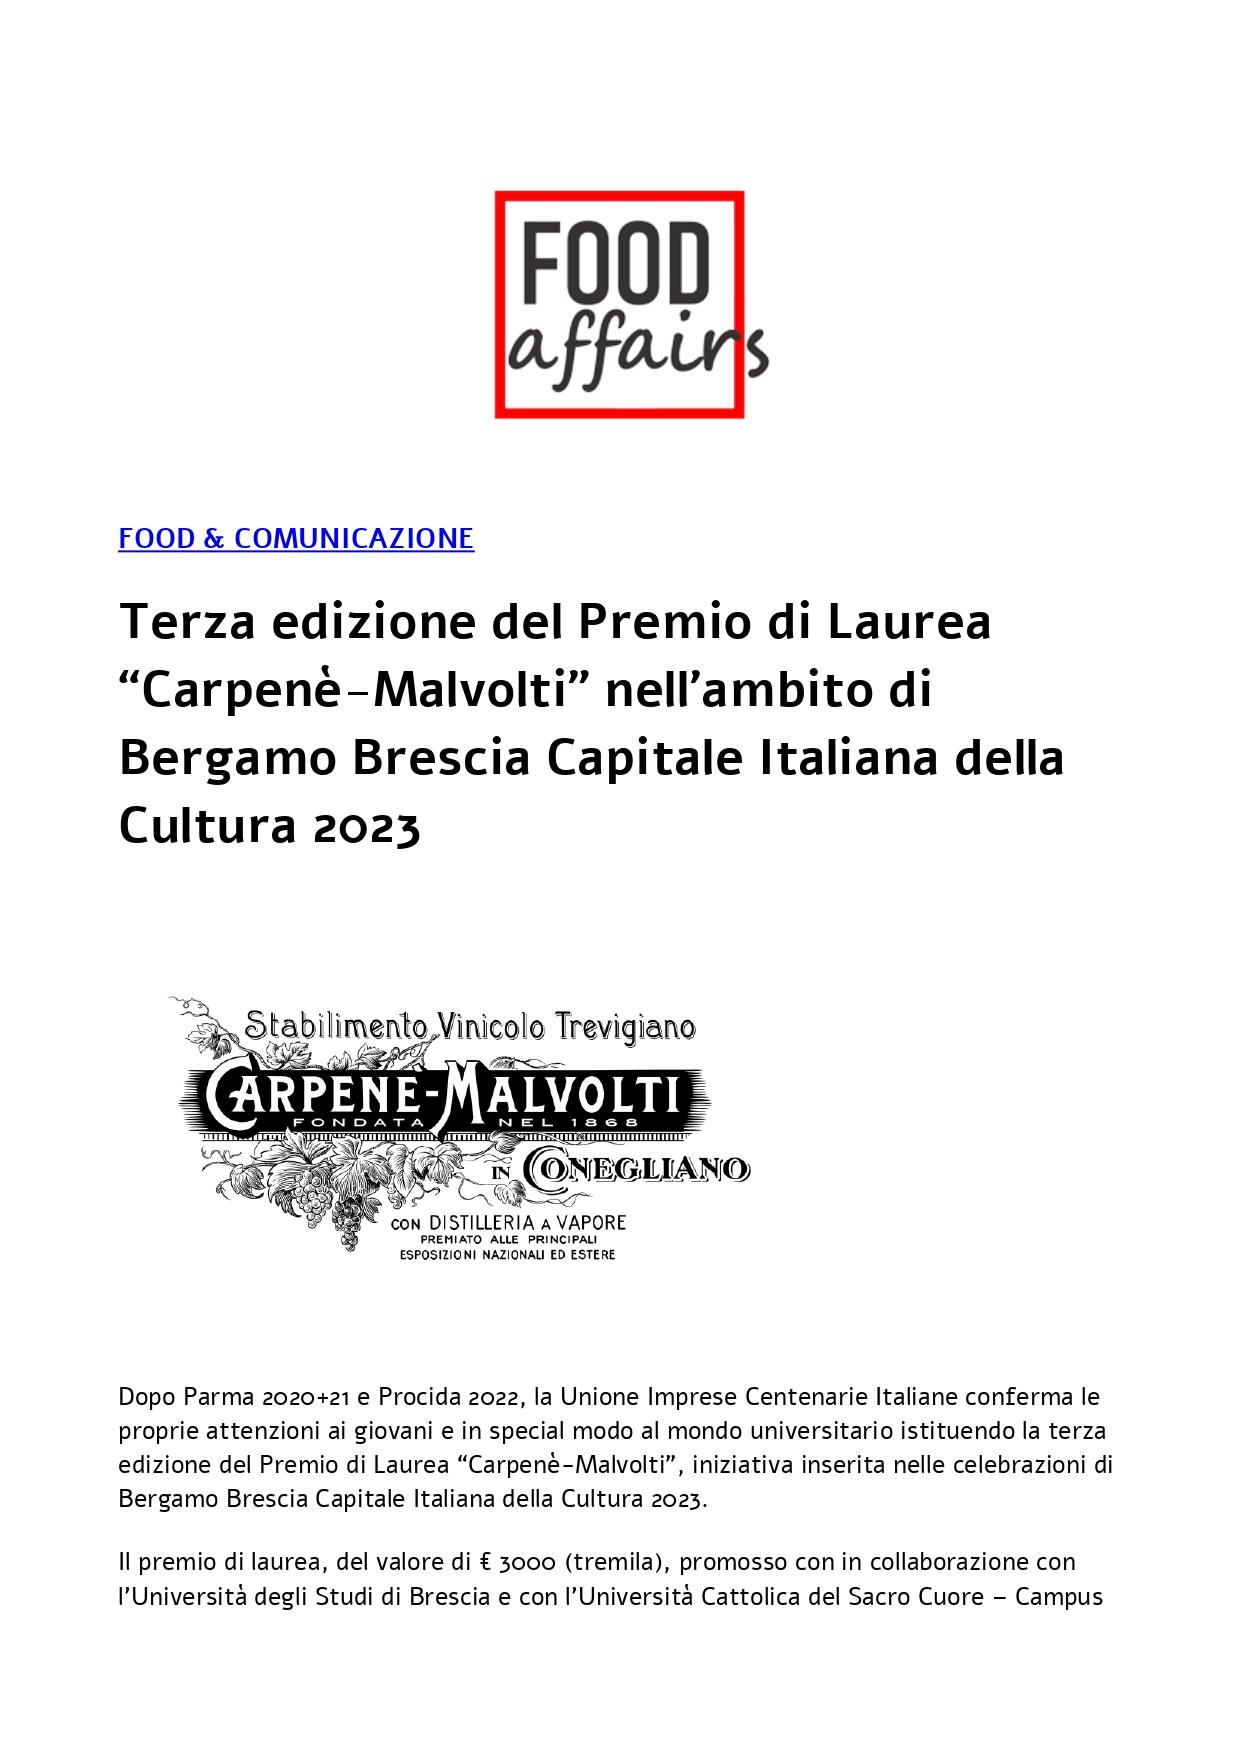 Food Affairs Terza edizione del Premio di Laurea Carpenè Malvolti 20 febbraio 2023 page 0001